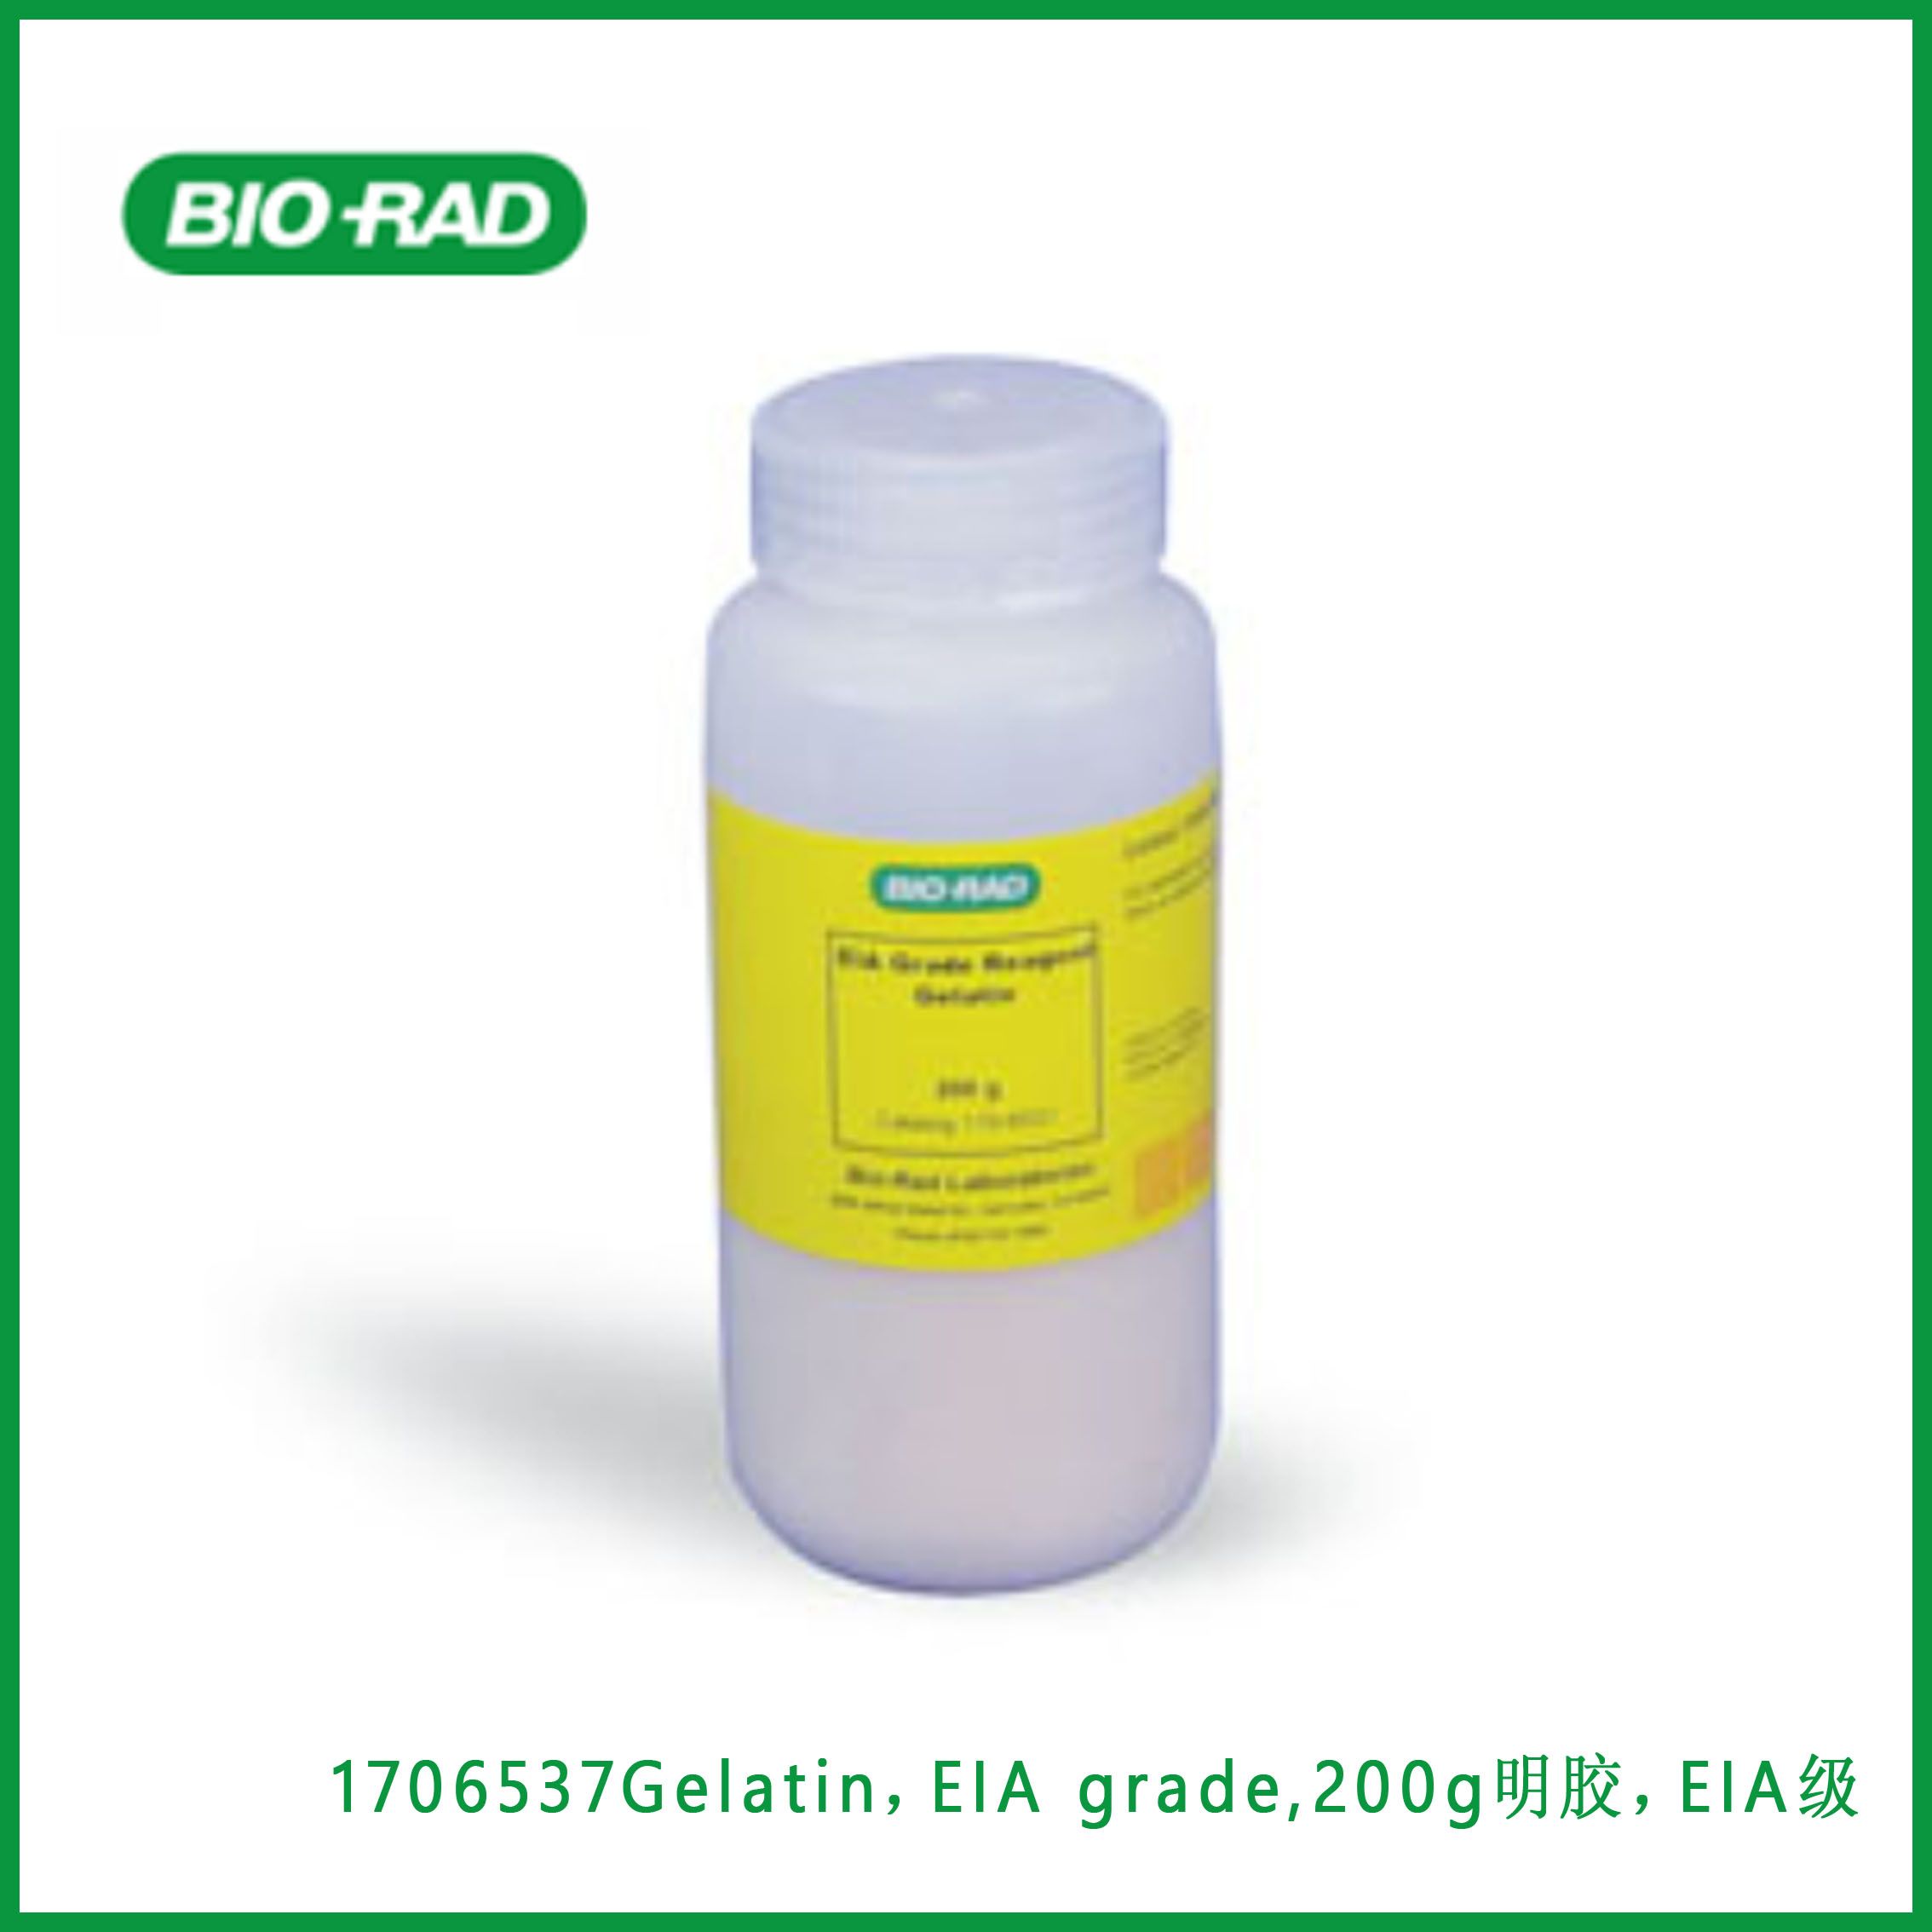 伯乐Bio-Rad1706537Gelatin，EIA grade,200g 明胶，EIA级,现货